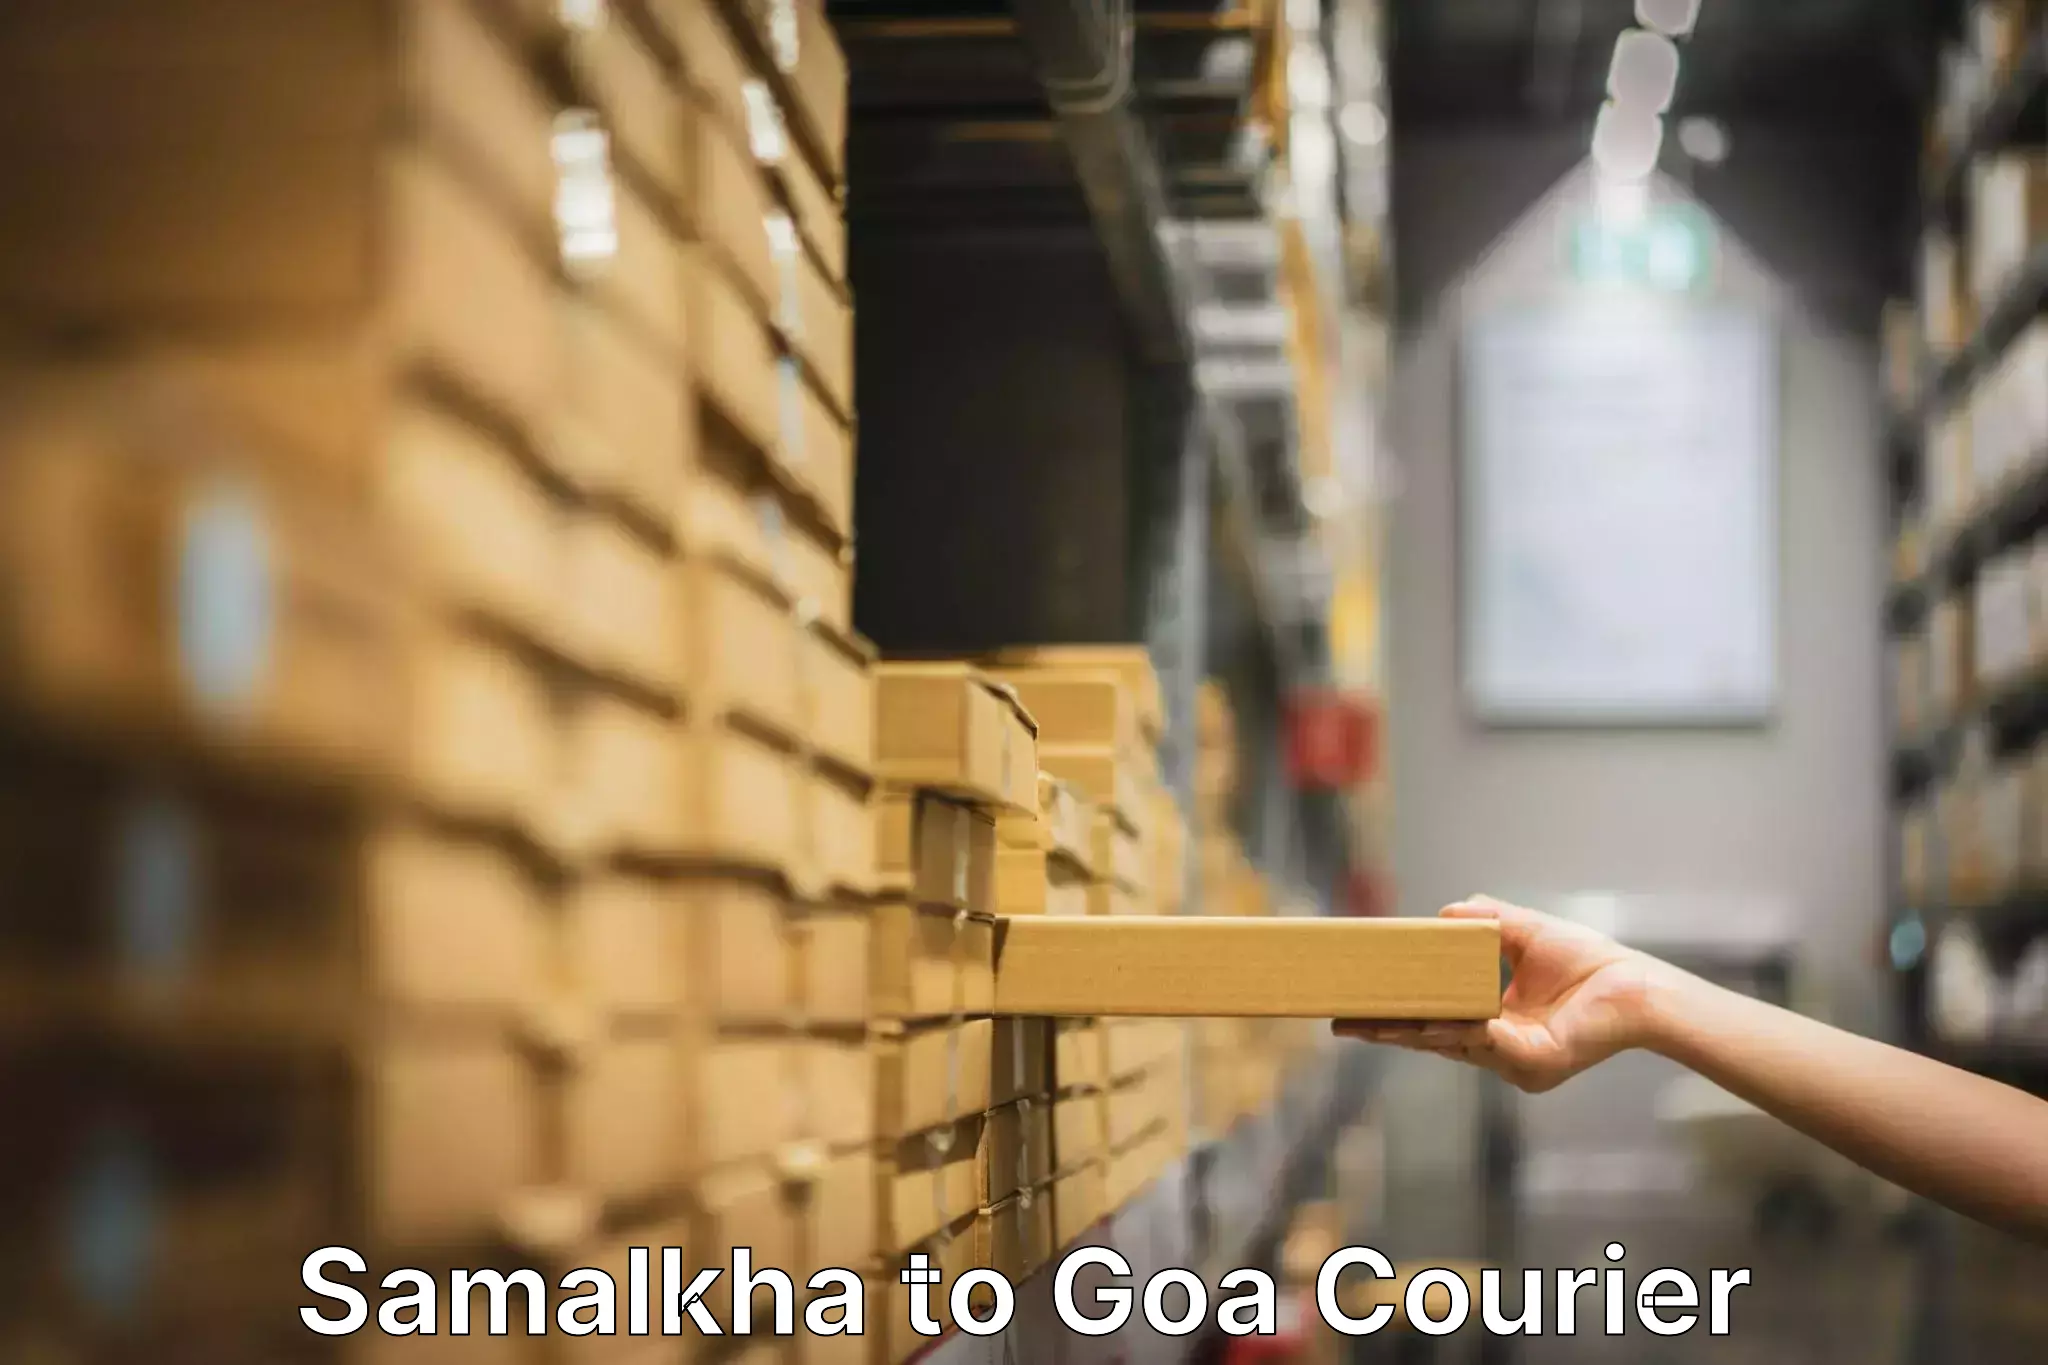 Efficient moving company Samalkha to Panaji